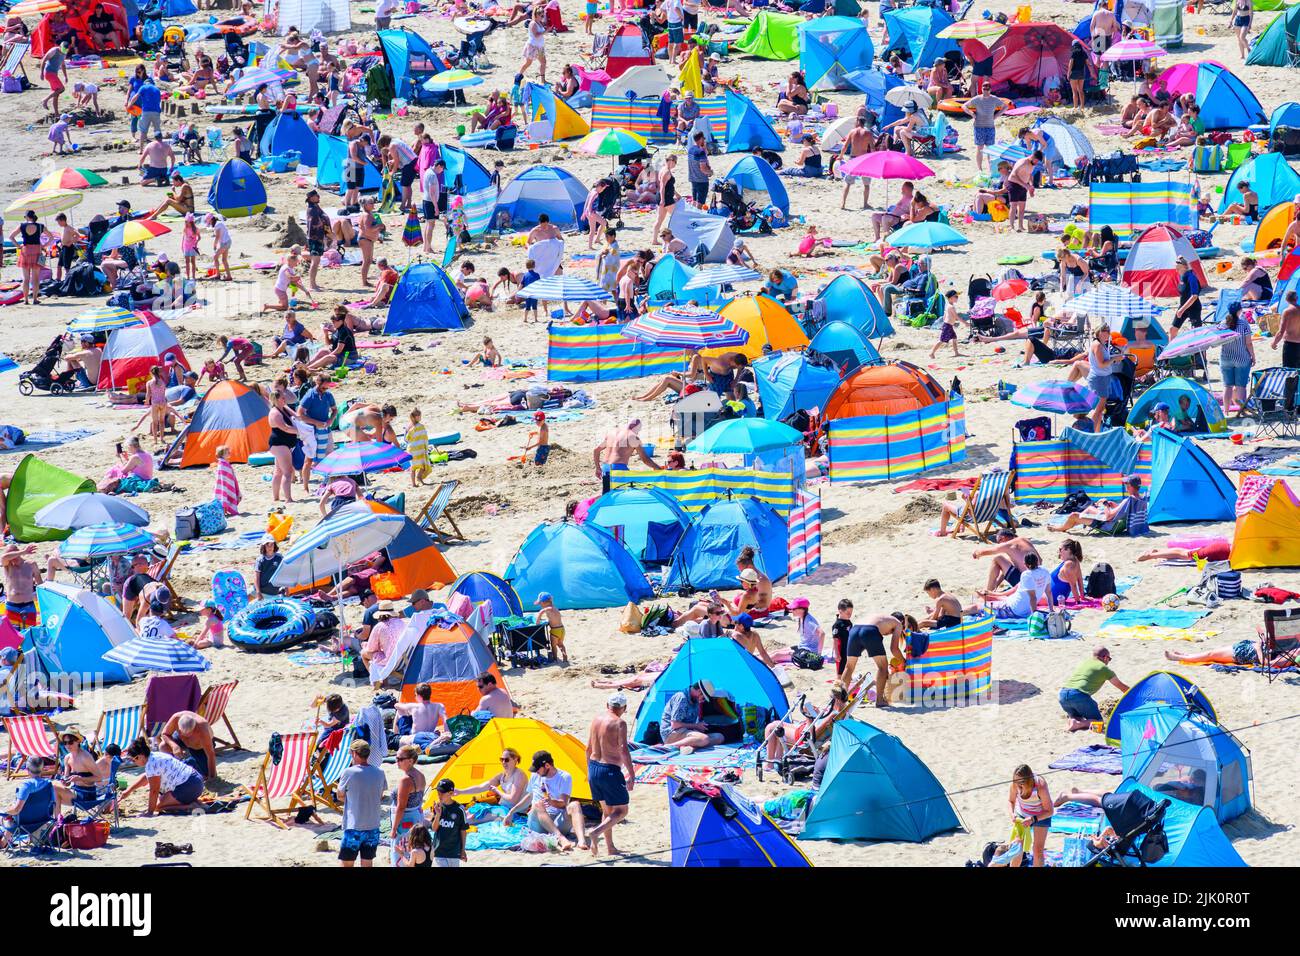 Lyme Regis, Dorset, Reino Unido. 29th de julio de 2022. Clima en el Reino Unido: Las multitudes de turistas y bañistas acuden a la playa abarrotada de la localidad costera de Lyme Regis para disfrutar del sol abrasador. Las familias, los turistas y los que buscan sol se empaparon del precioso clima soleado, ya que hizo un bienvenido regreso a tiempo para el fin de semana. Crédito: Celia McMahon/Alamy Live News Foto de stock